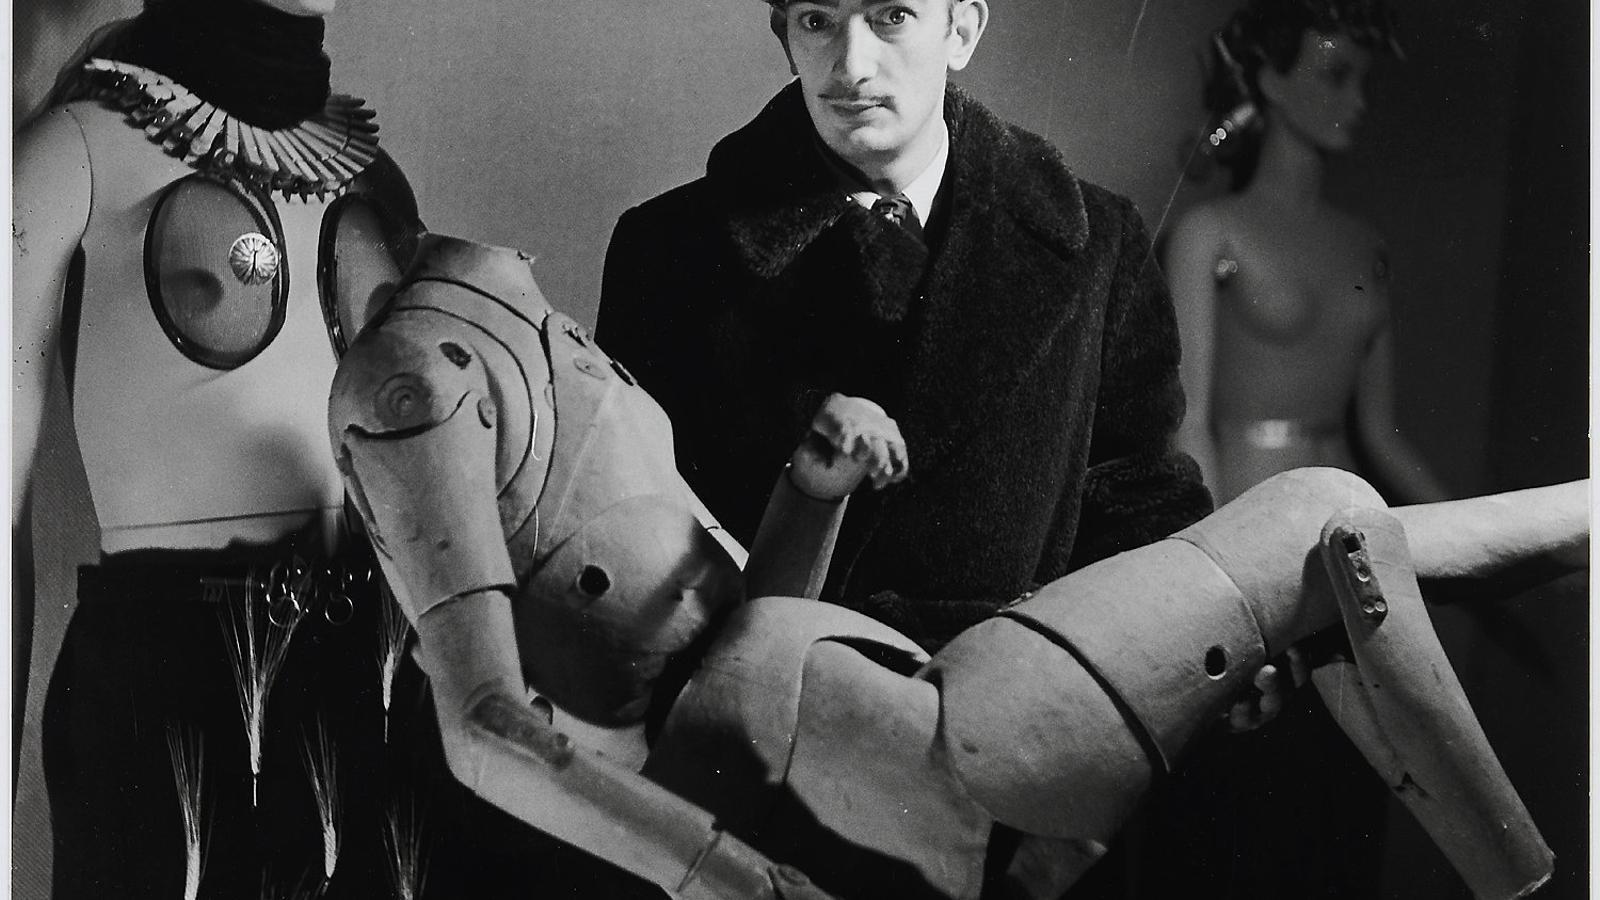 "Elles photographient Dali" - Dali et son mannequin a l’Exposition Internationale du Surrealisme (París, 1938). DENISE BELLON 